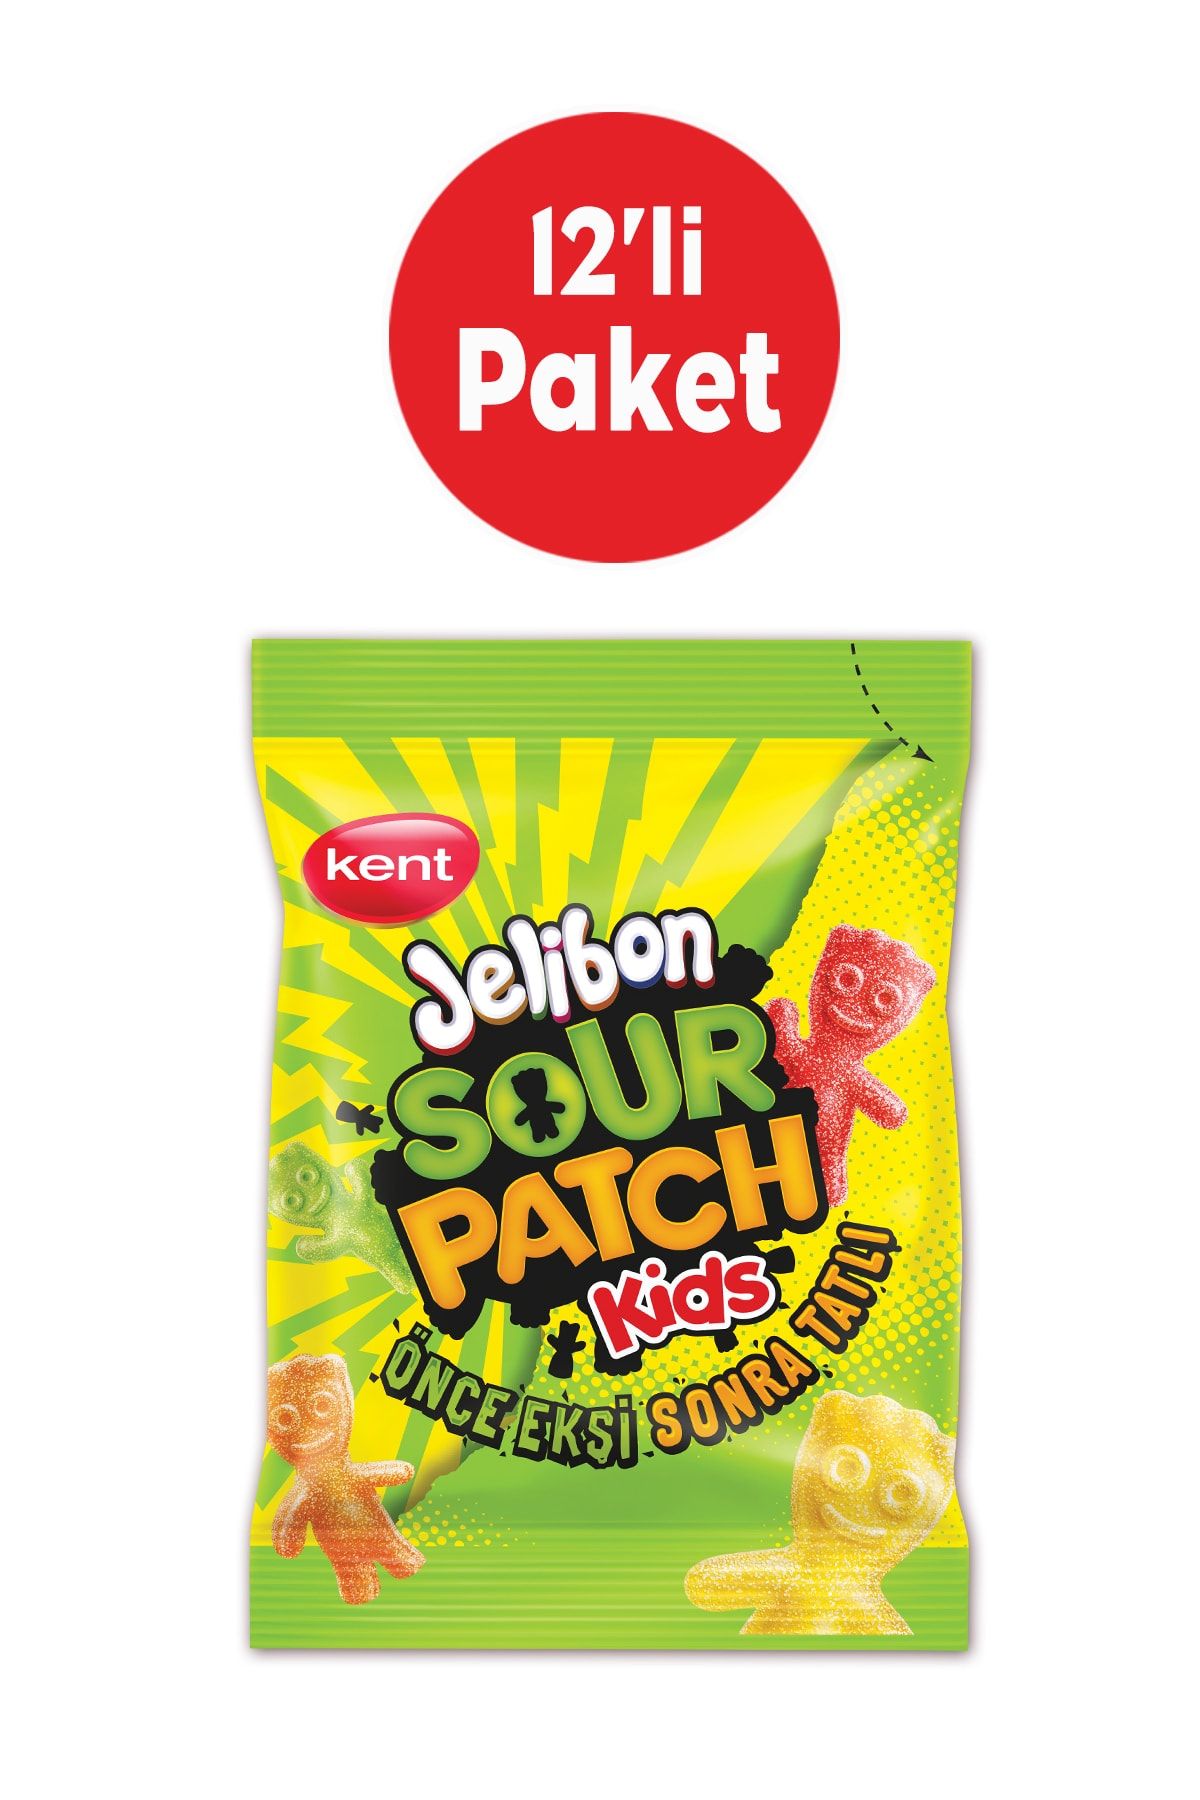 Jelibon Sour Patch Kids Karışık Meyve Aromalı Şekerleme 80 Gr - 12'li Paket